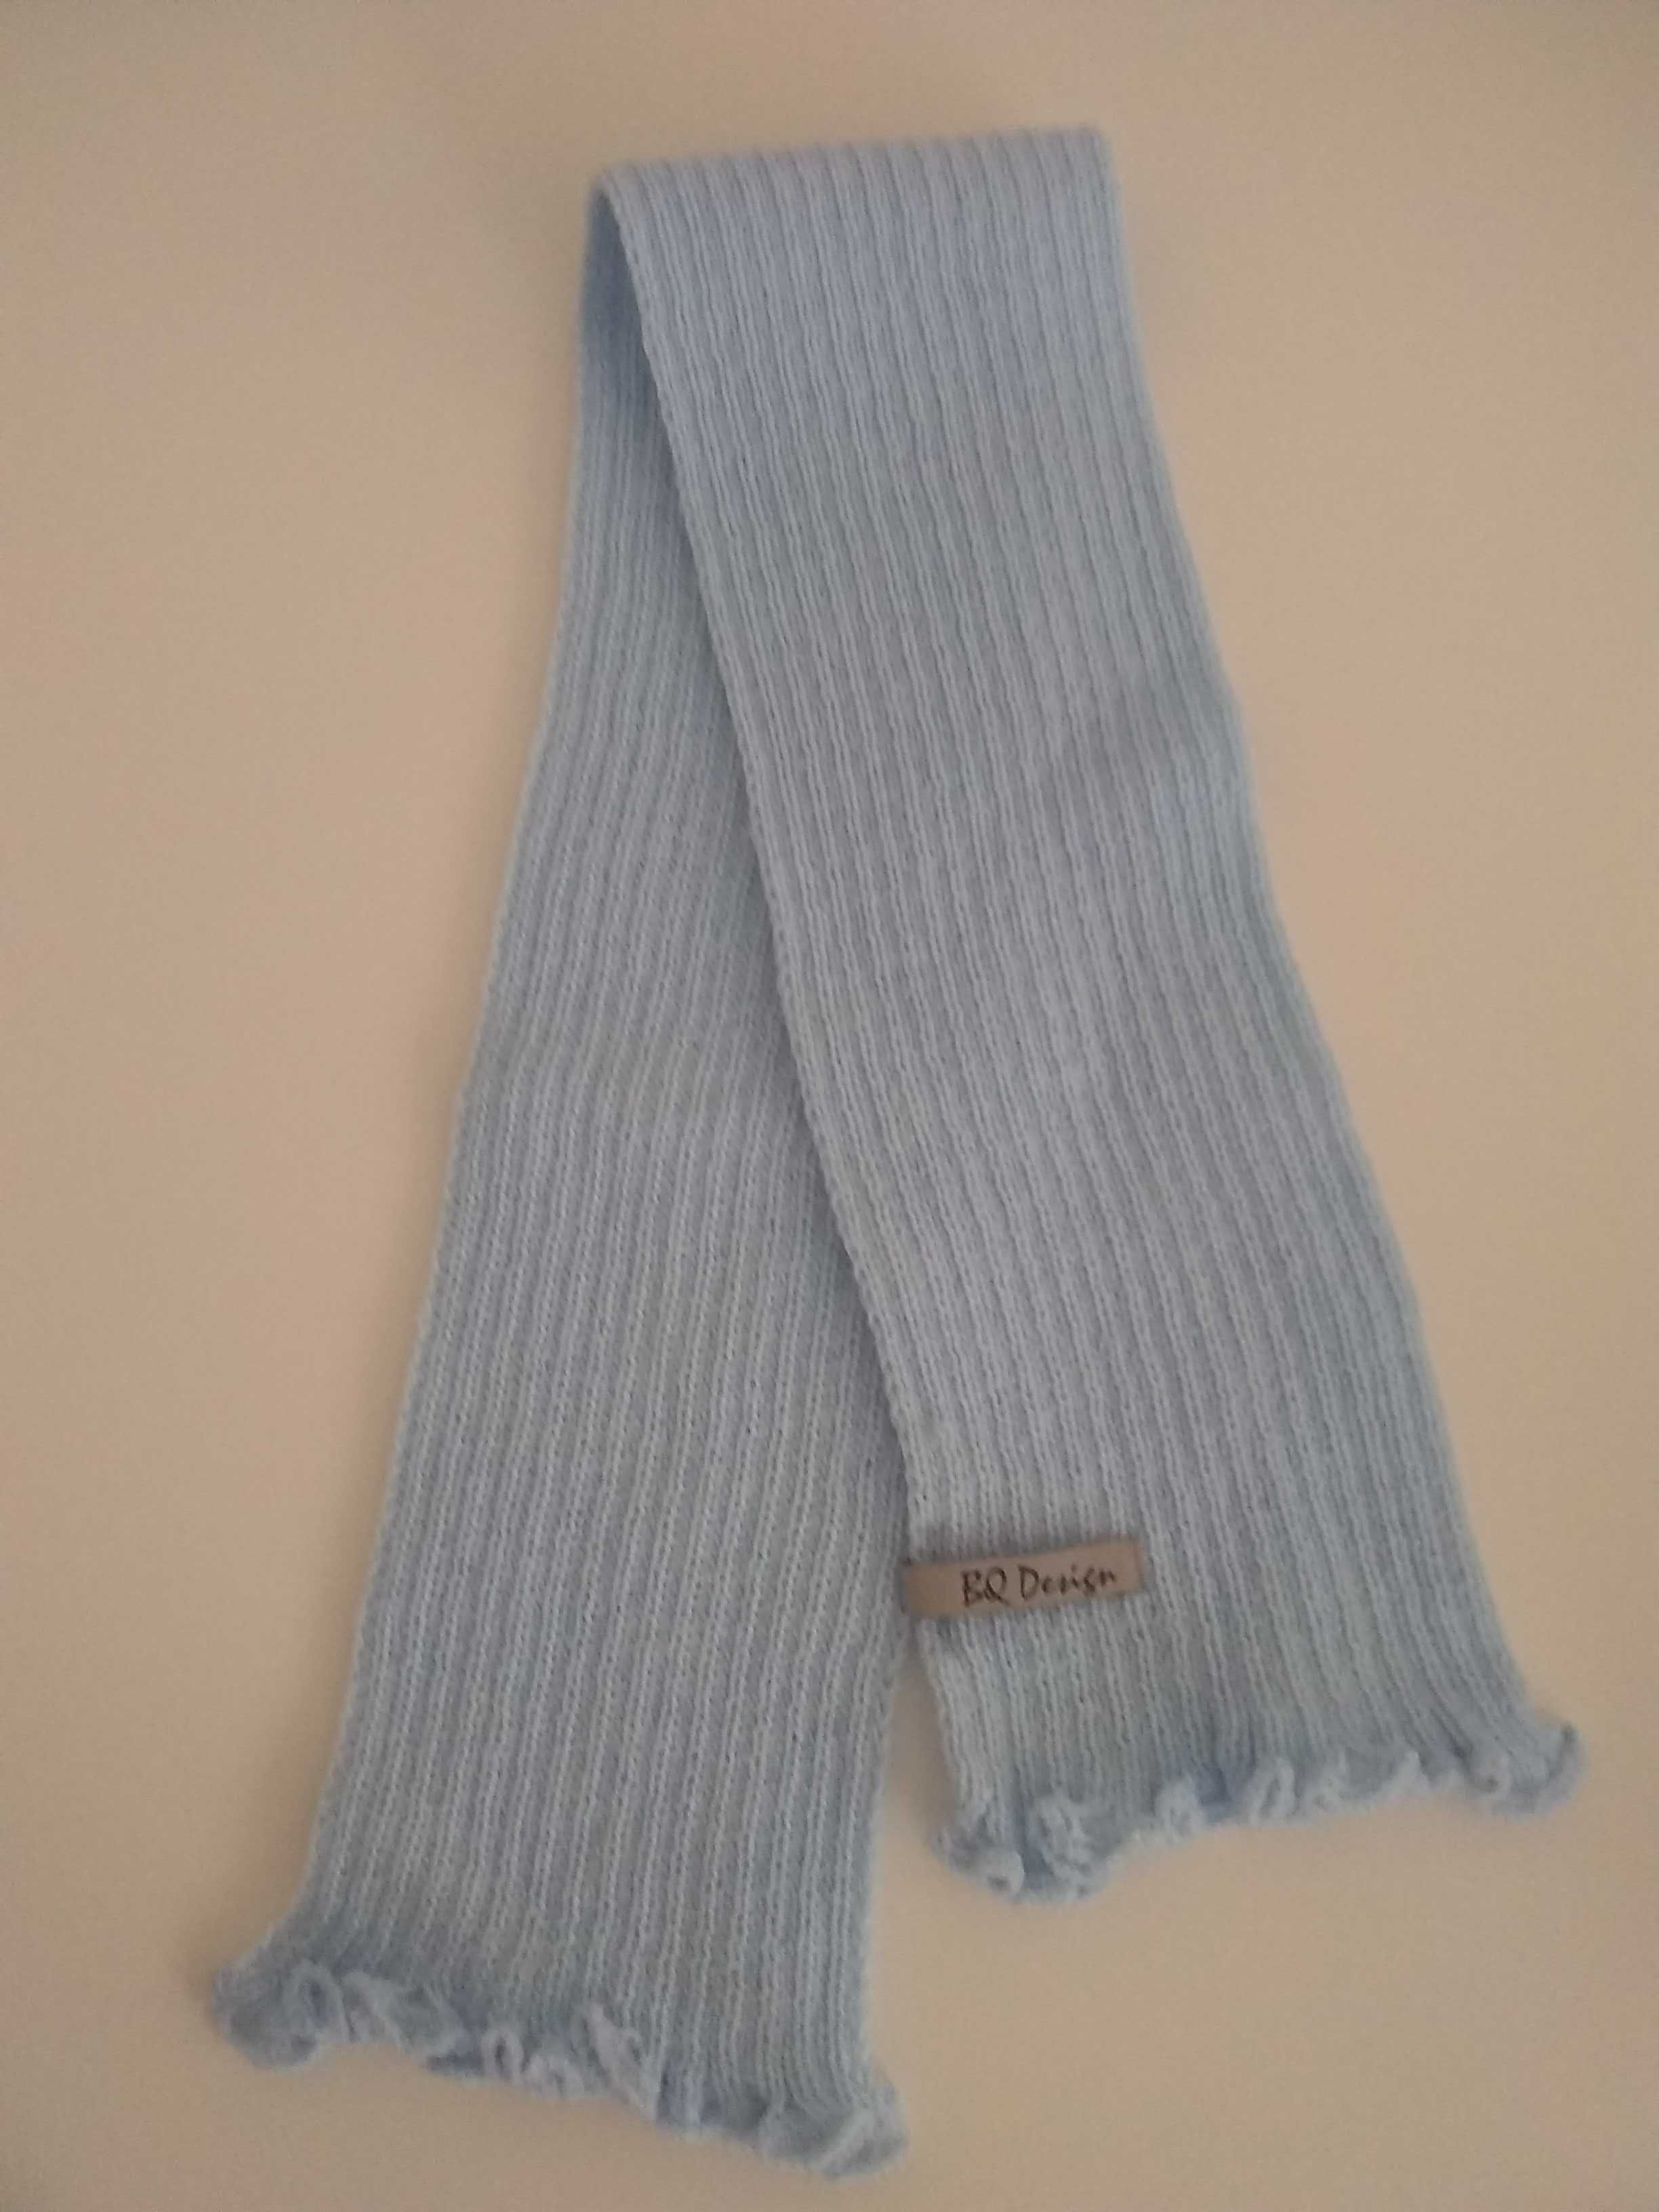 Nowy komplet czapka (r. 40), szalik i rękawiczki chłopięce niebieskie